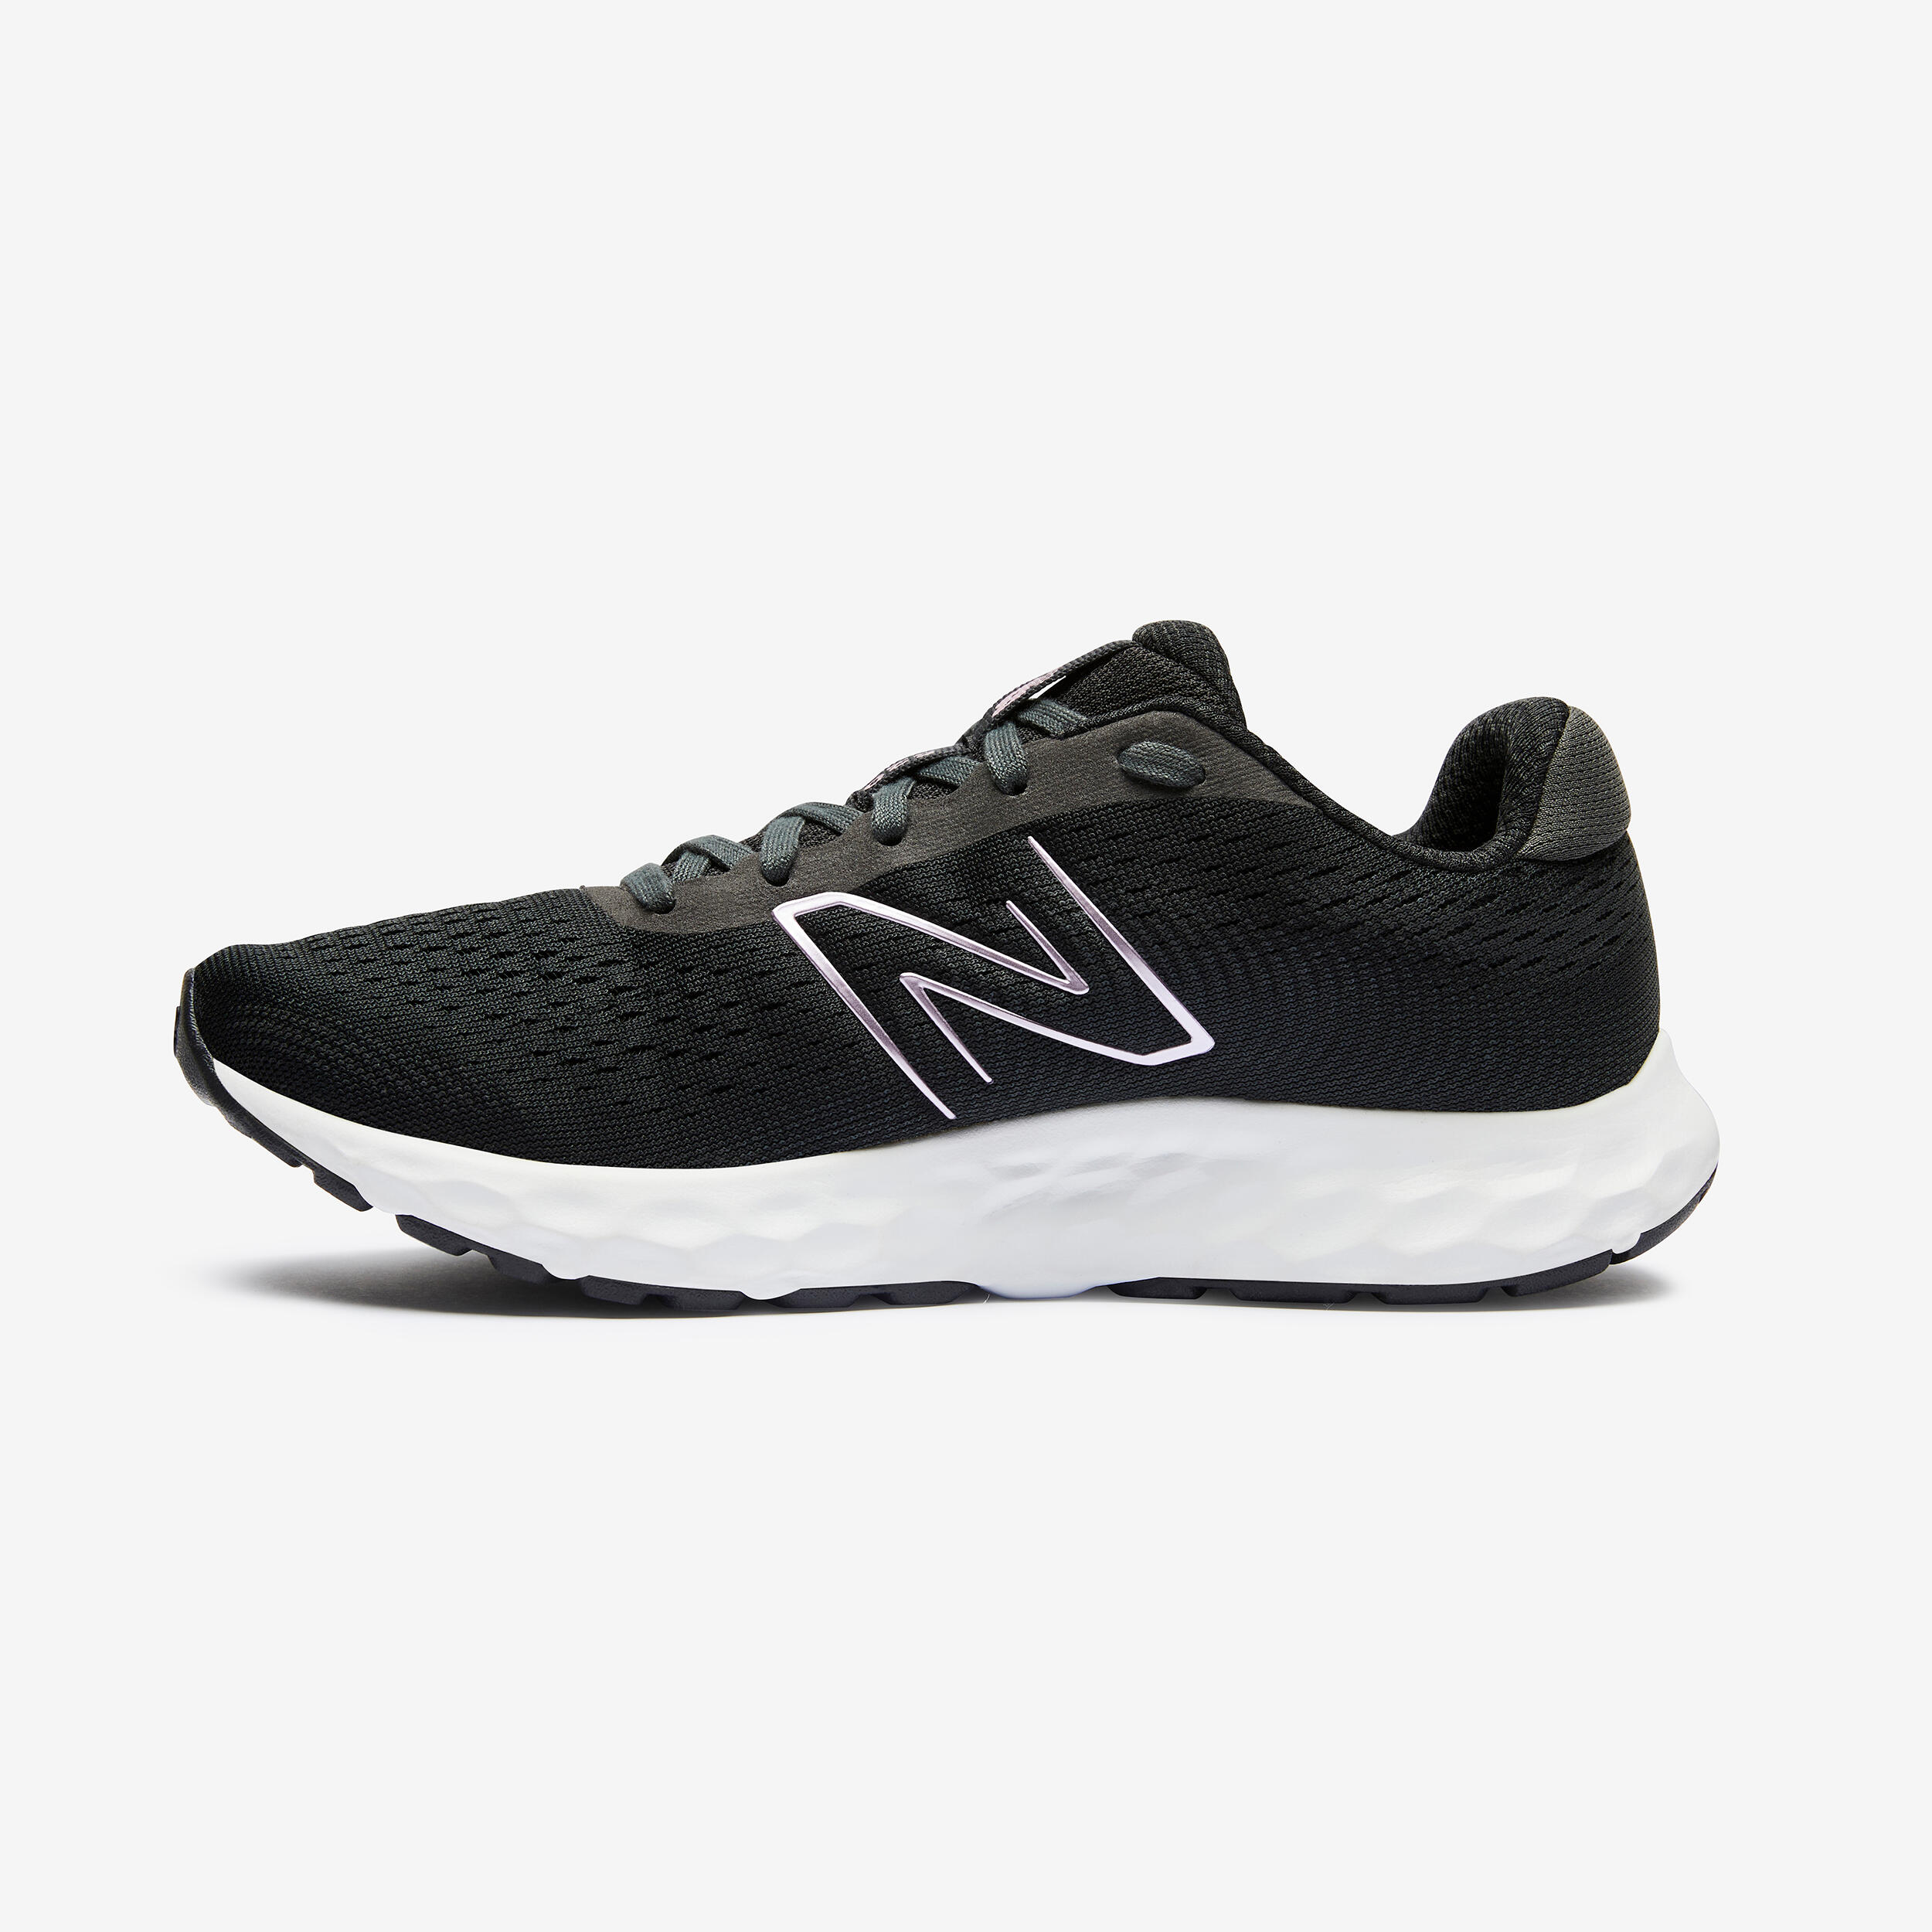 NB W520 v8 BLACK women's running shoes 5/8